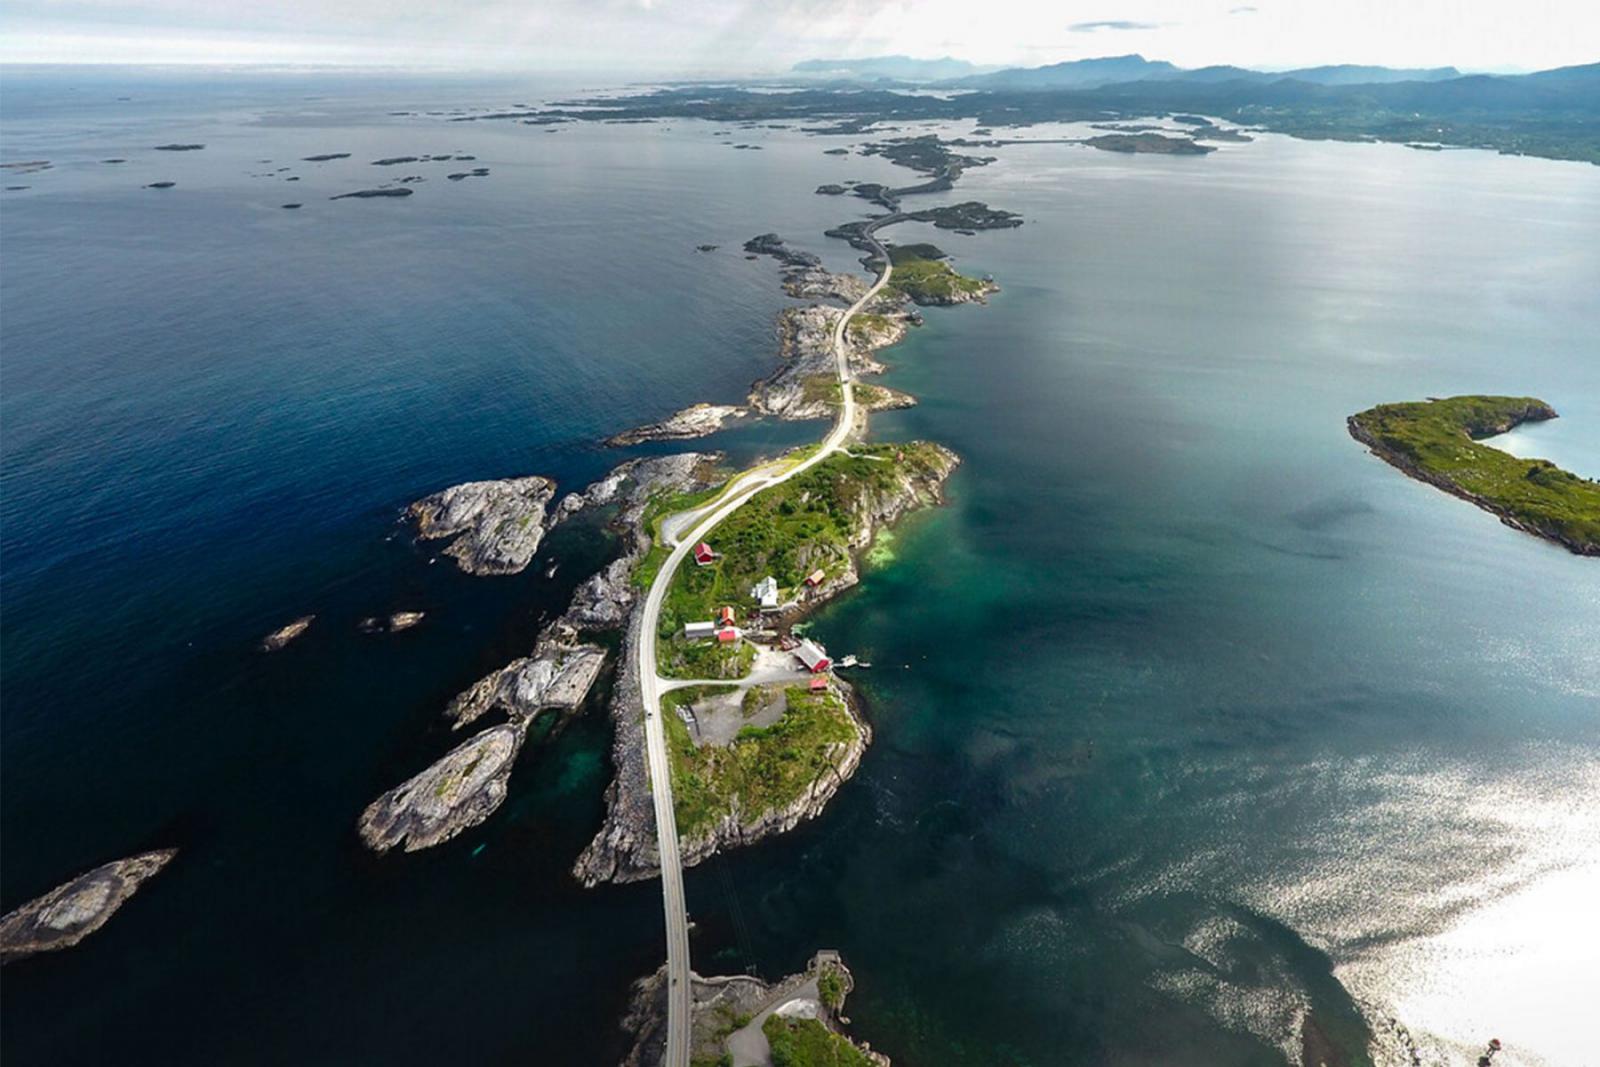 De Atlantic Road in Noorwegen uit de film van James Bond